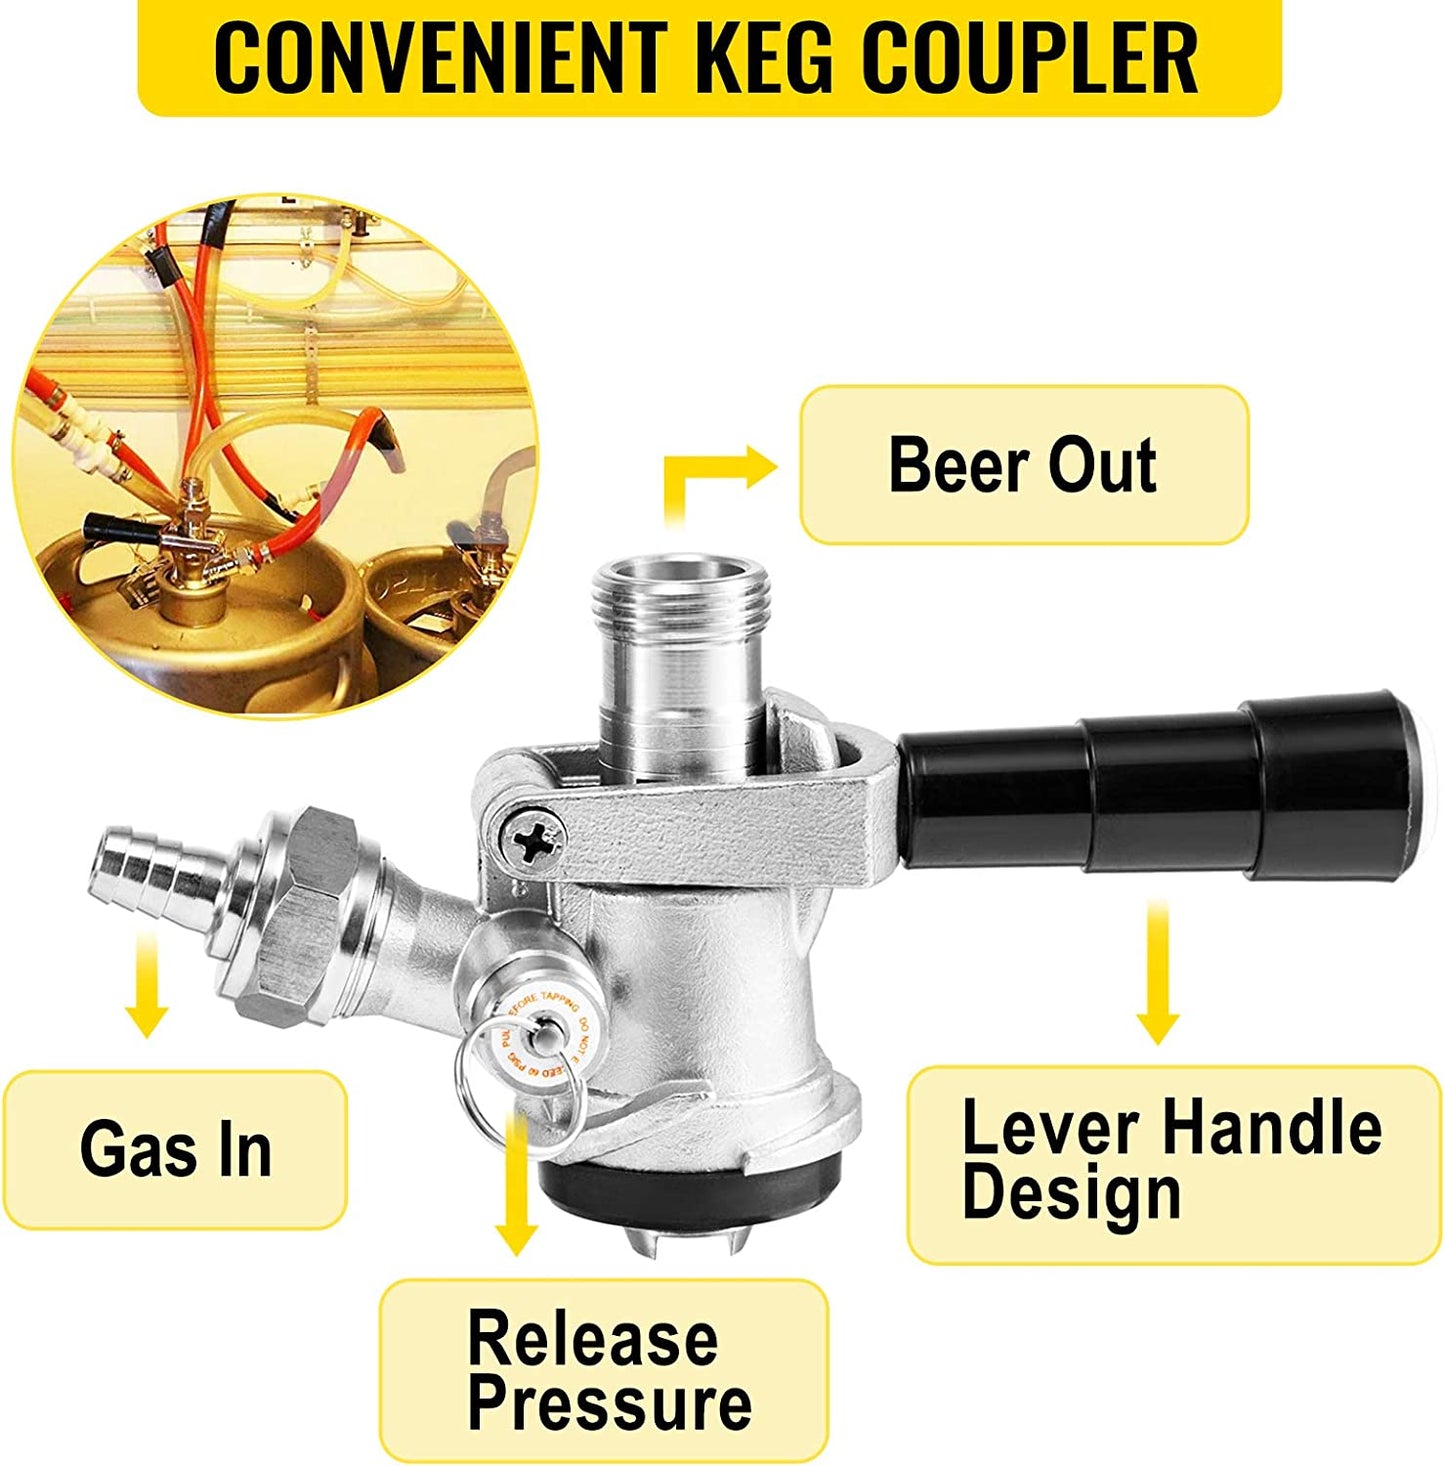 Kegerator Tower Kit, Double Tap Beer Conversion Kit, No Tank Keg Conversion Kit, Stainless Steel Keg Tower, Deluxe Kegarator Beer Conversion with Dual Gauge Regulator & D-System Keg Coupler